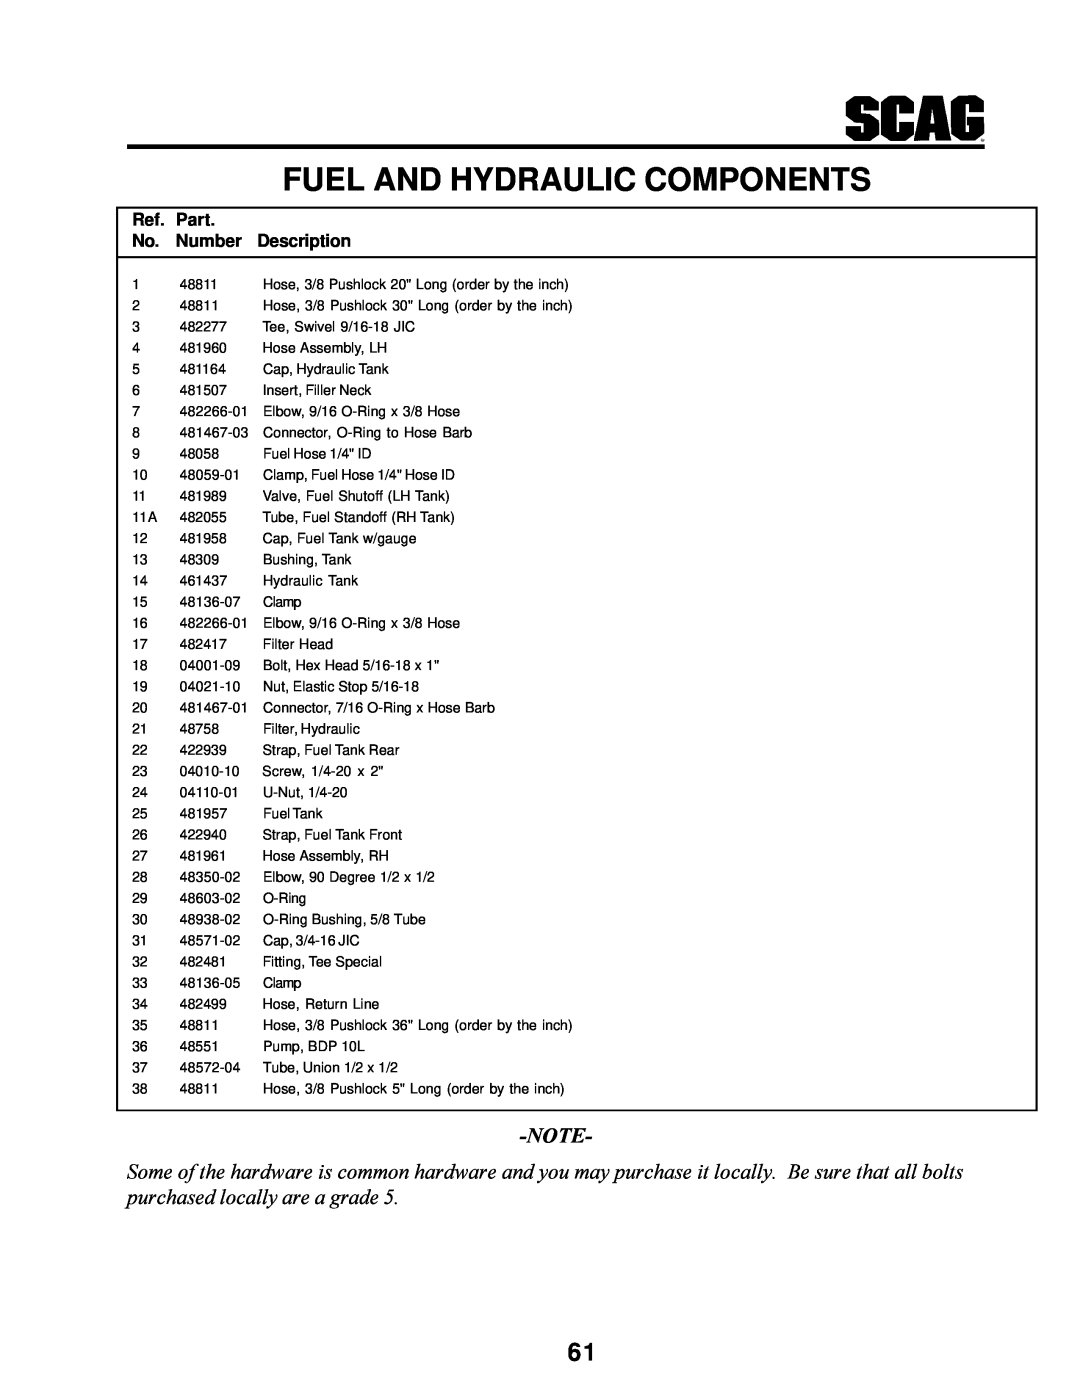 MB QUART SCR manual Fuel And Hydraulic Components, Ref. Part No. Number Description 